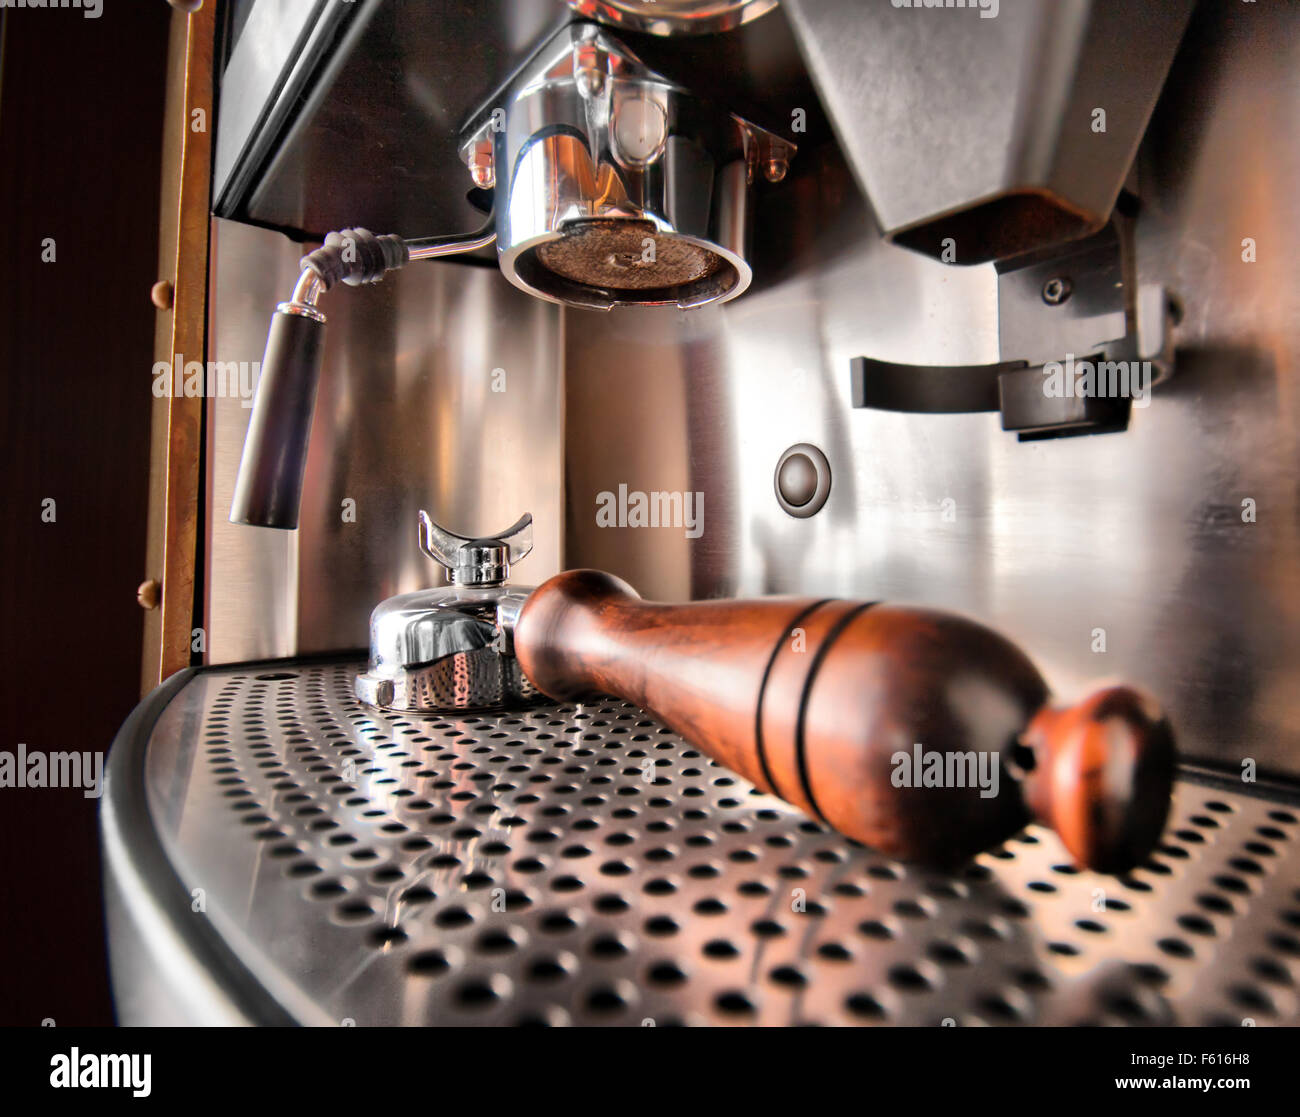 Una Cafetera Espresso Manual Retrostyle Hecha En Una Mesa Imagen de archivo  - Imagen de hecho, bebida: 217379711